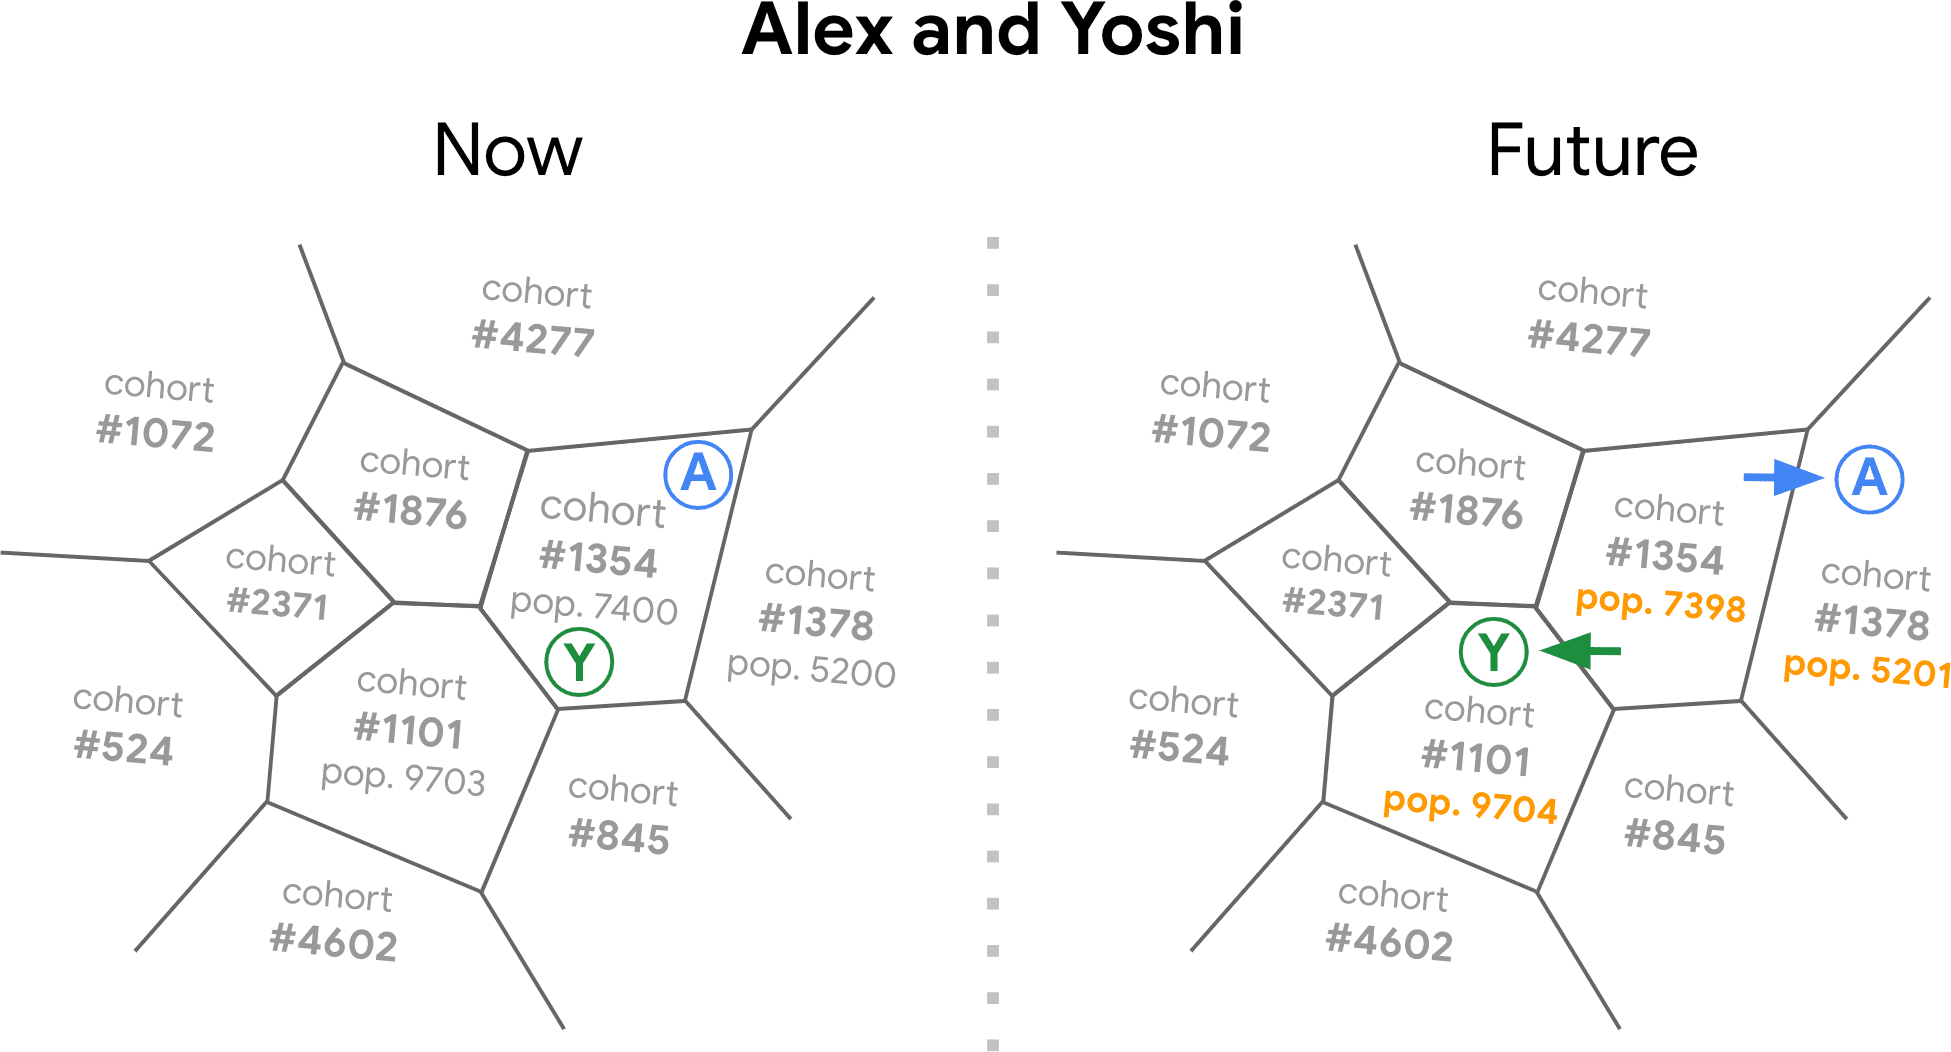 Diagramm des von einem FLoC-Server erstellten „Browserverlaufsbereichs“ mit mehreren Segmenten, jeweils mit einer Kohortennummer. Das Diagramm zeigt, wie die Browser der Nutzer Yoshi und Alex von einer Kohorte zu einer anderen wechseln, wenn sich ihre Browserinteressen im Laufe der Zeit ändern.